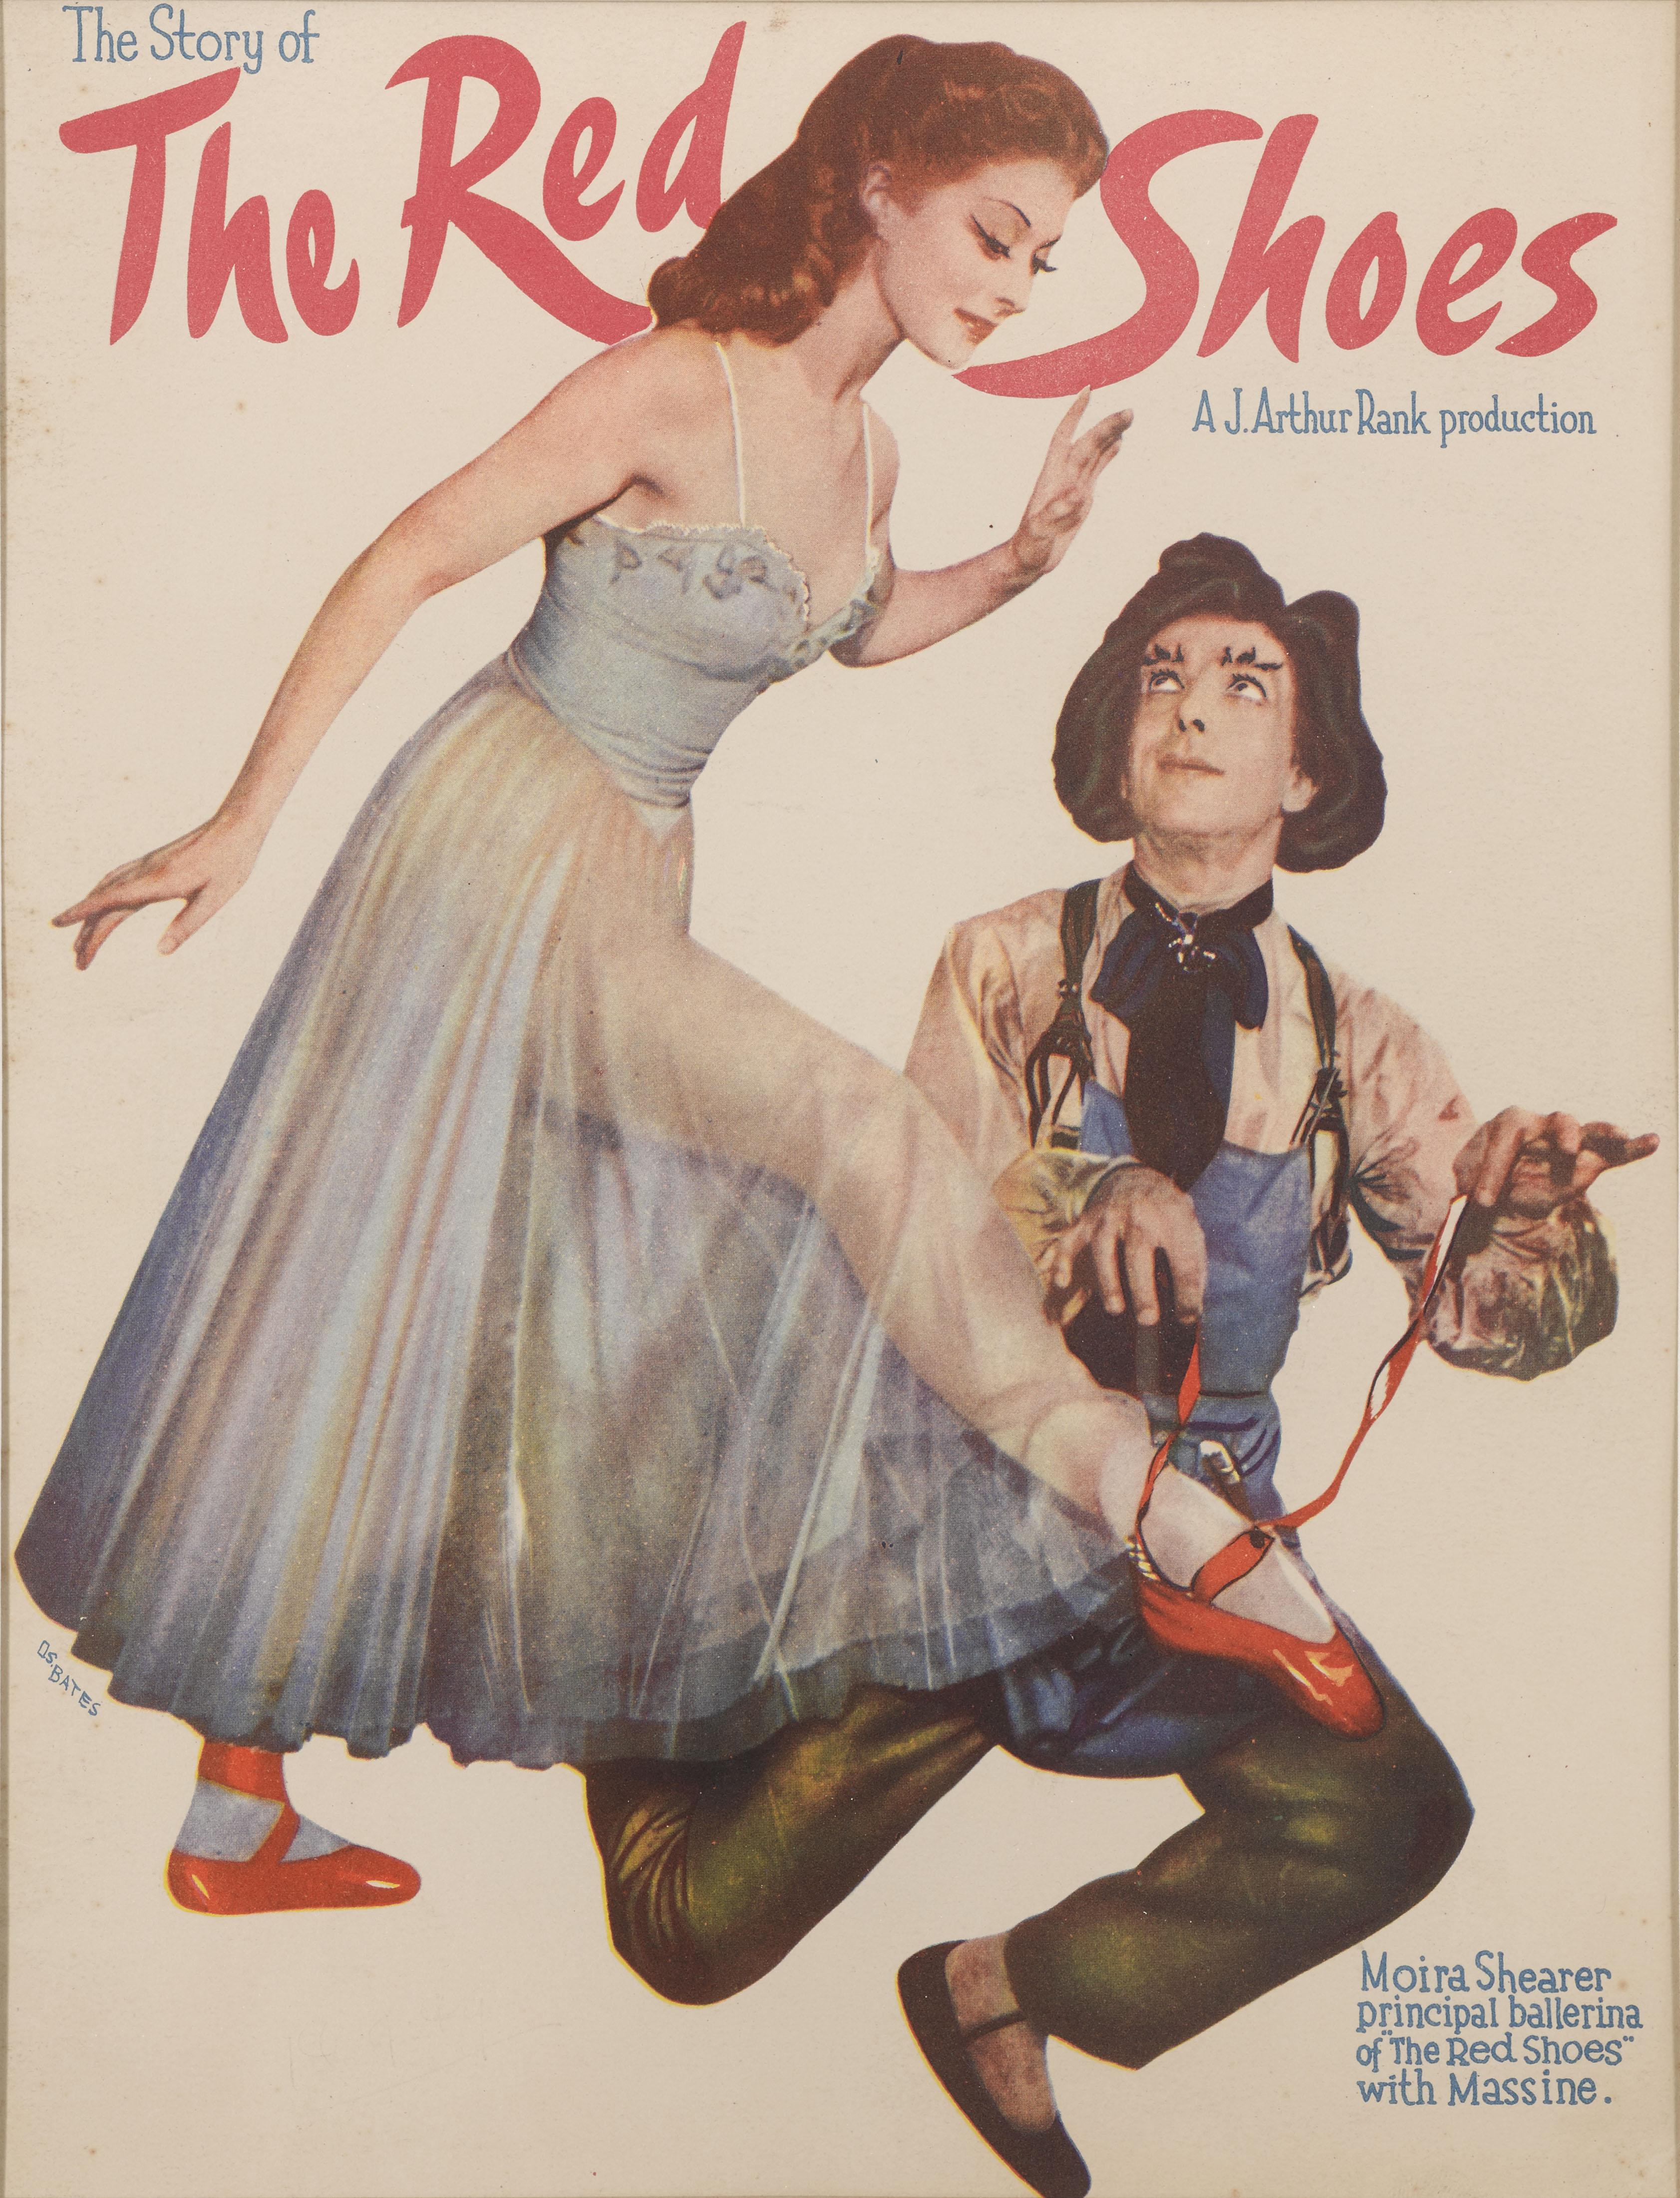 Une rare couverture de programme souvenir australien pour The Red Shoes 1948. Ce film a été réalisé par le célèbre duo Michael Powell et Emeric Pressburger et est considéré comme l'un des plus grands succès de l'histoire de l'humanité.  les